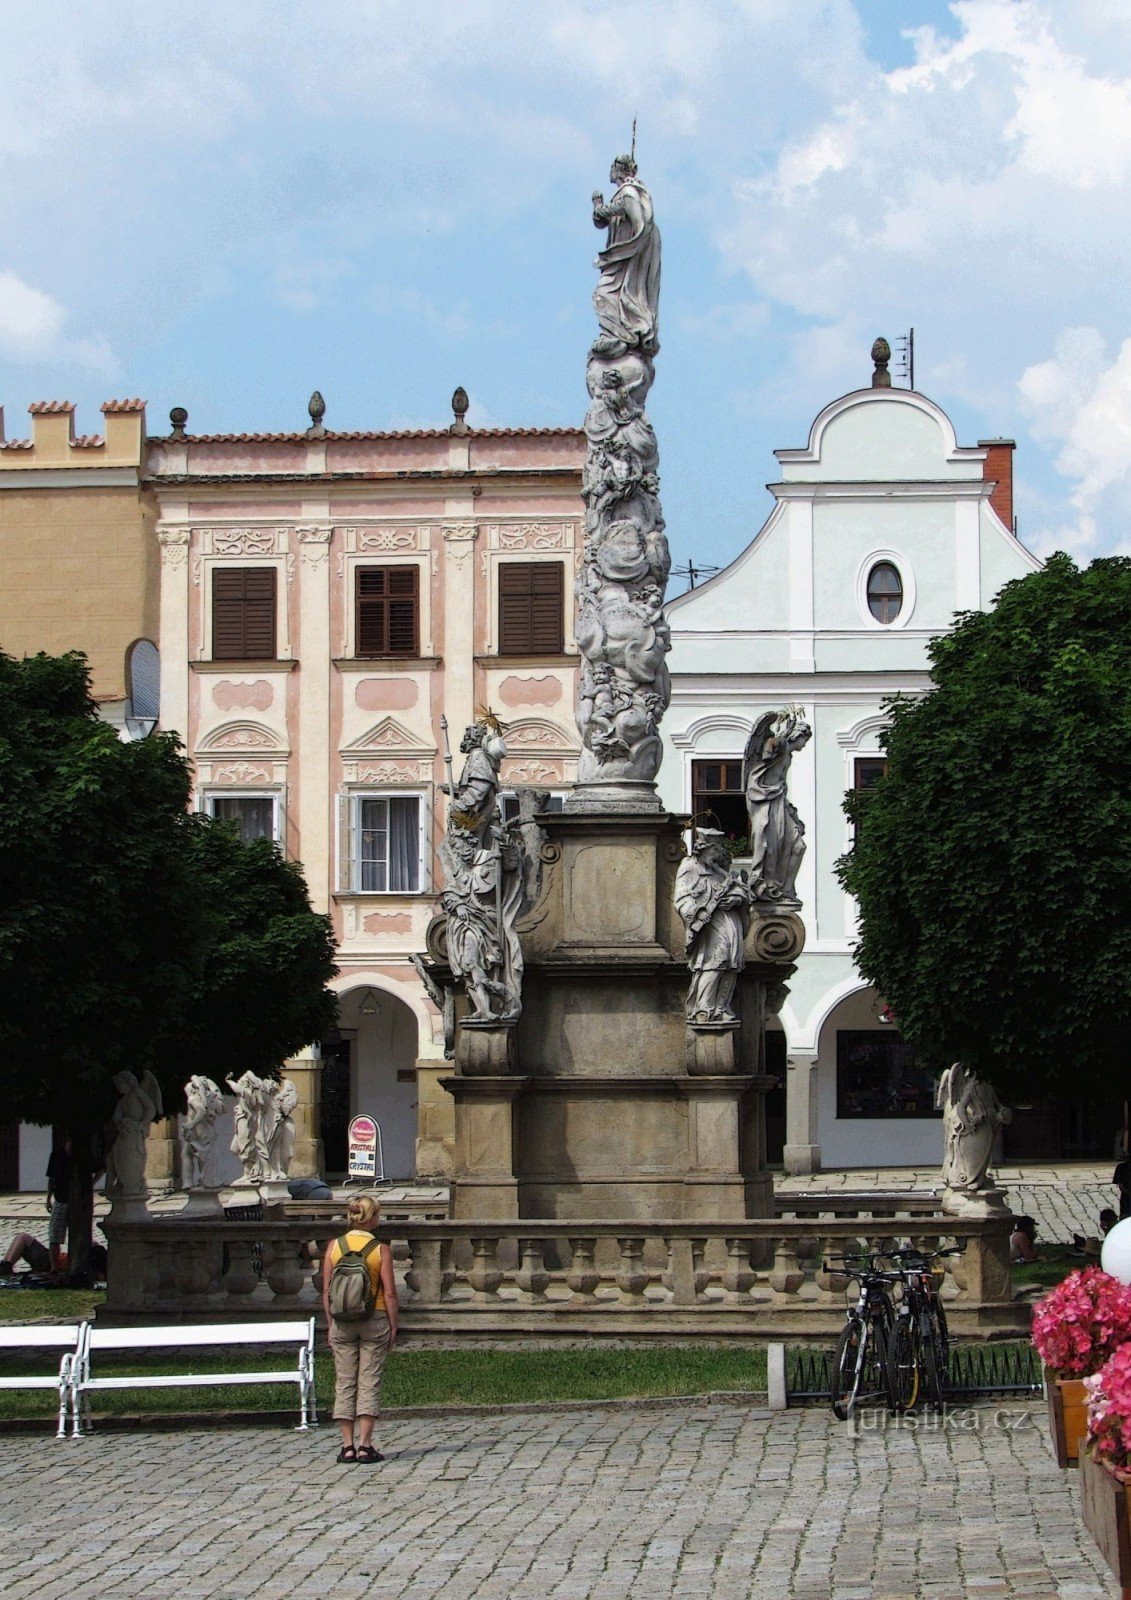 Μαριανή στήλη στην πλατεία στο Telč